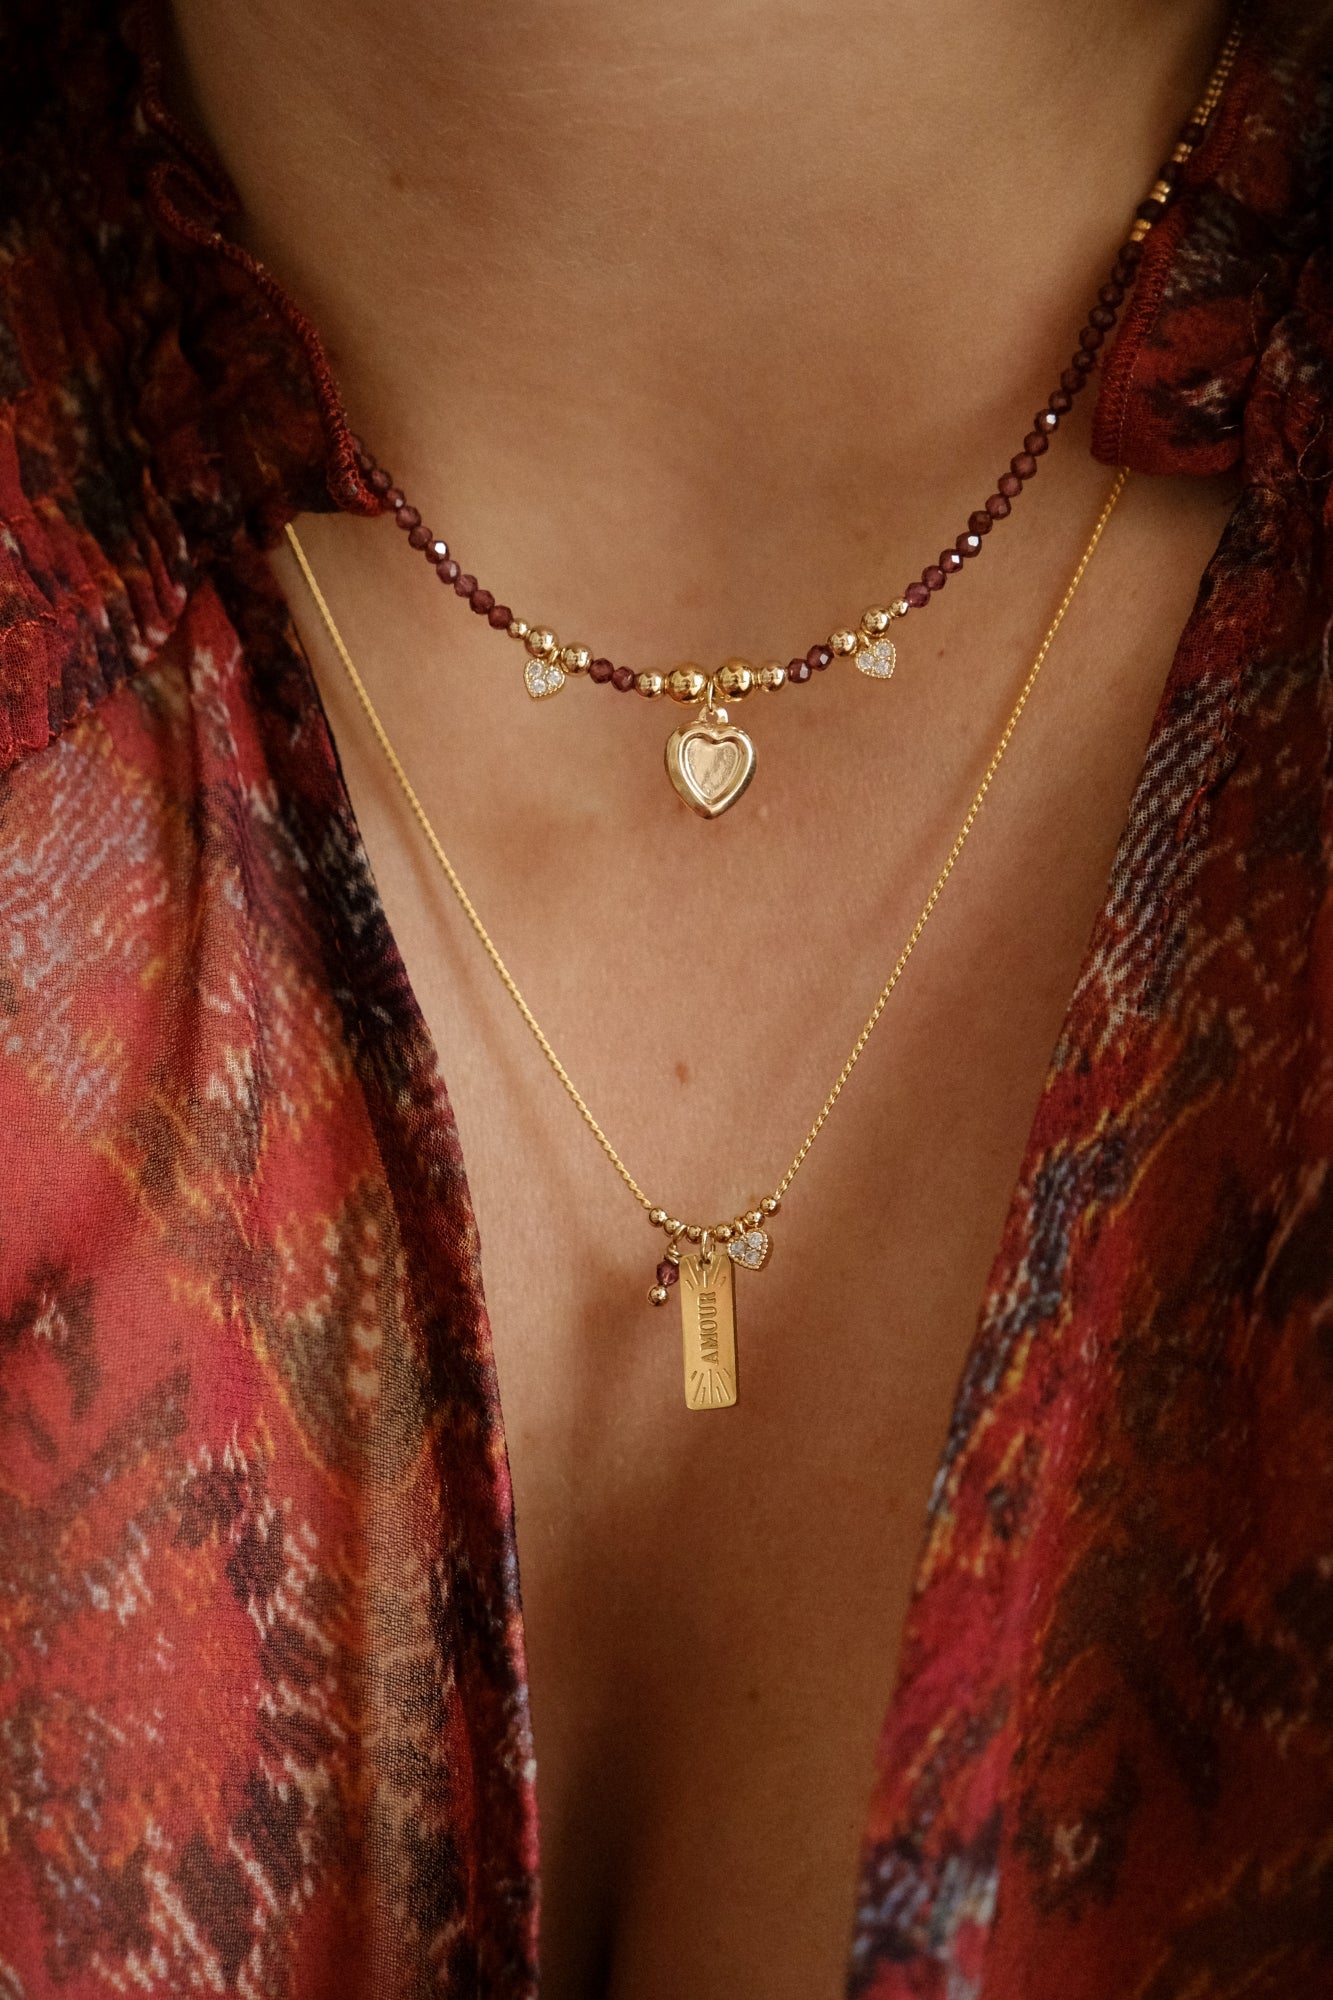 “Montague” necklace